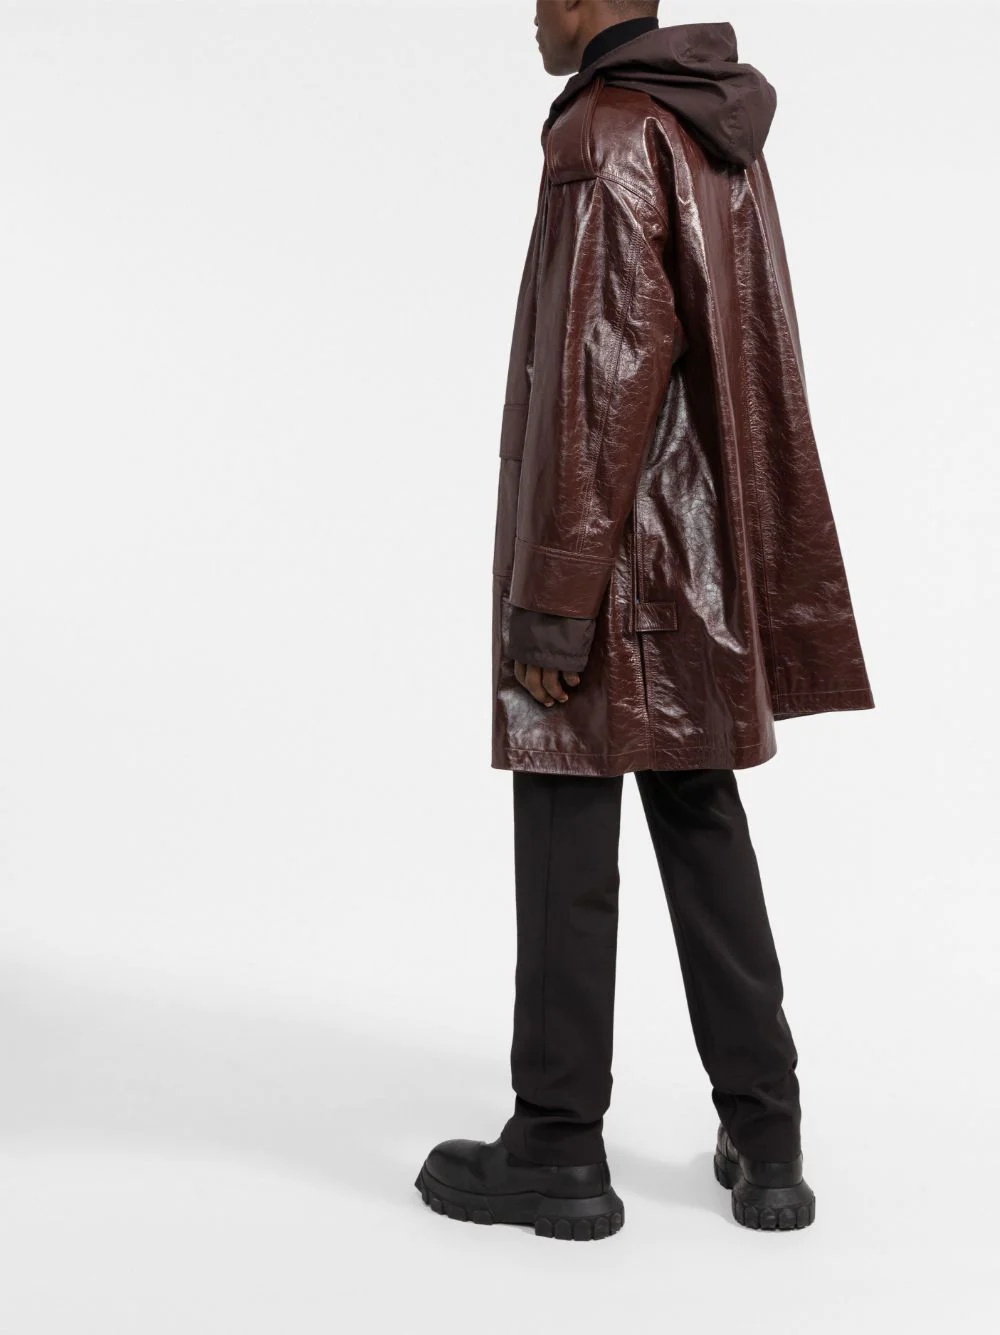 zipped-up leather coat - 4